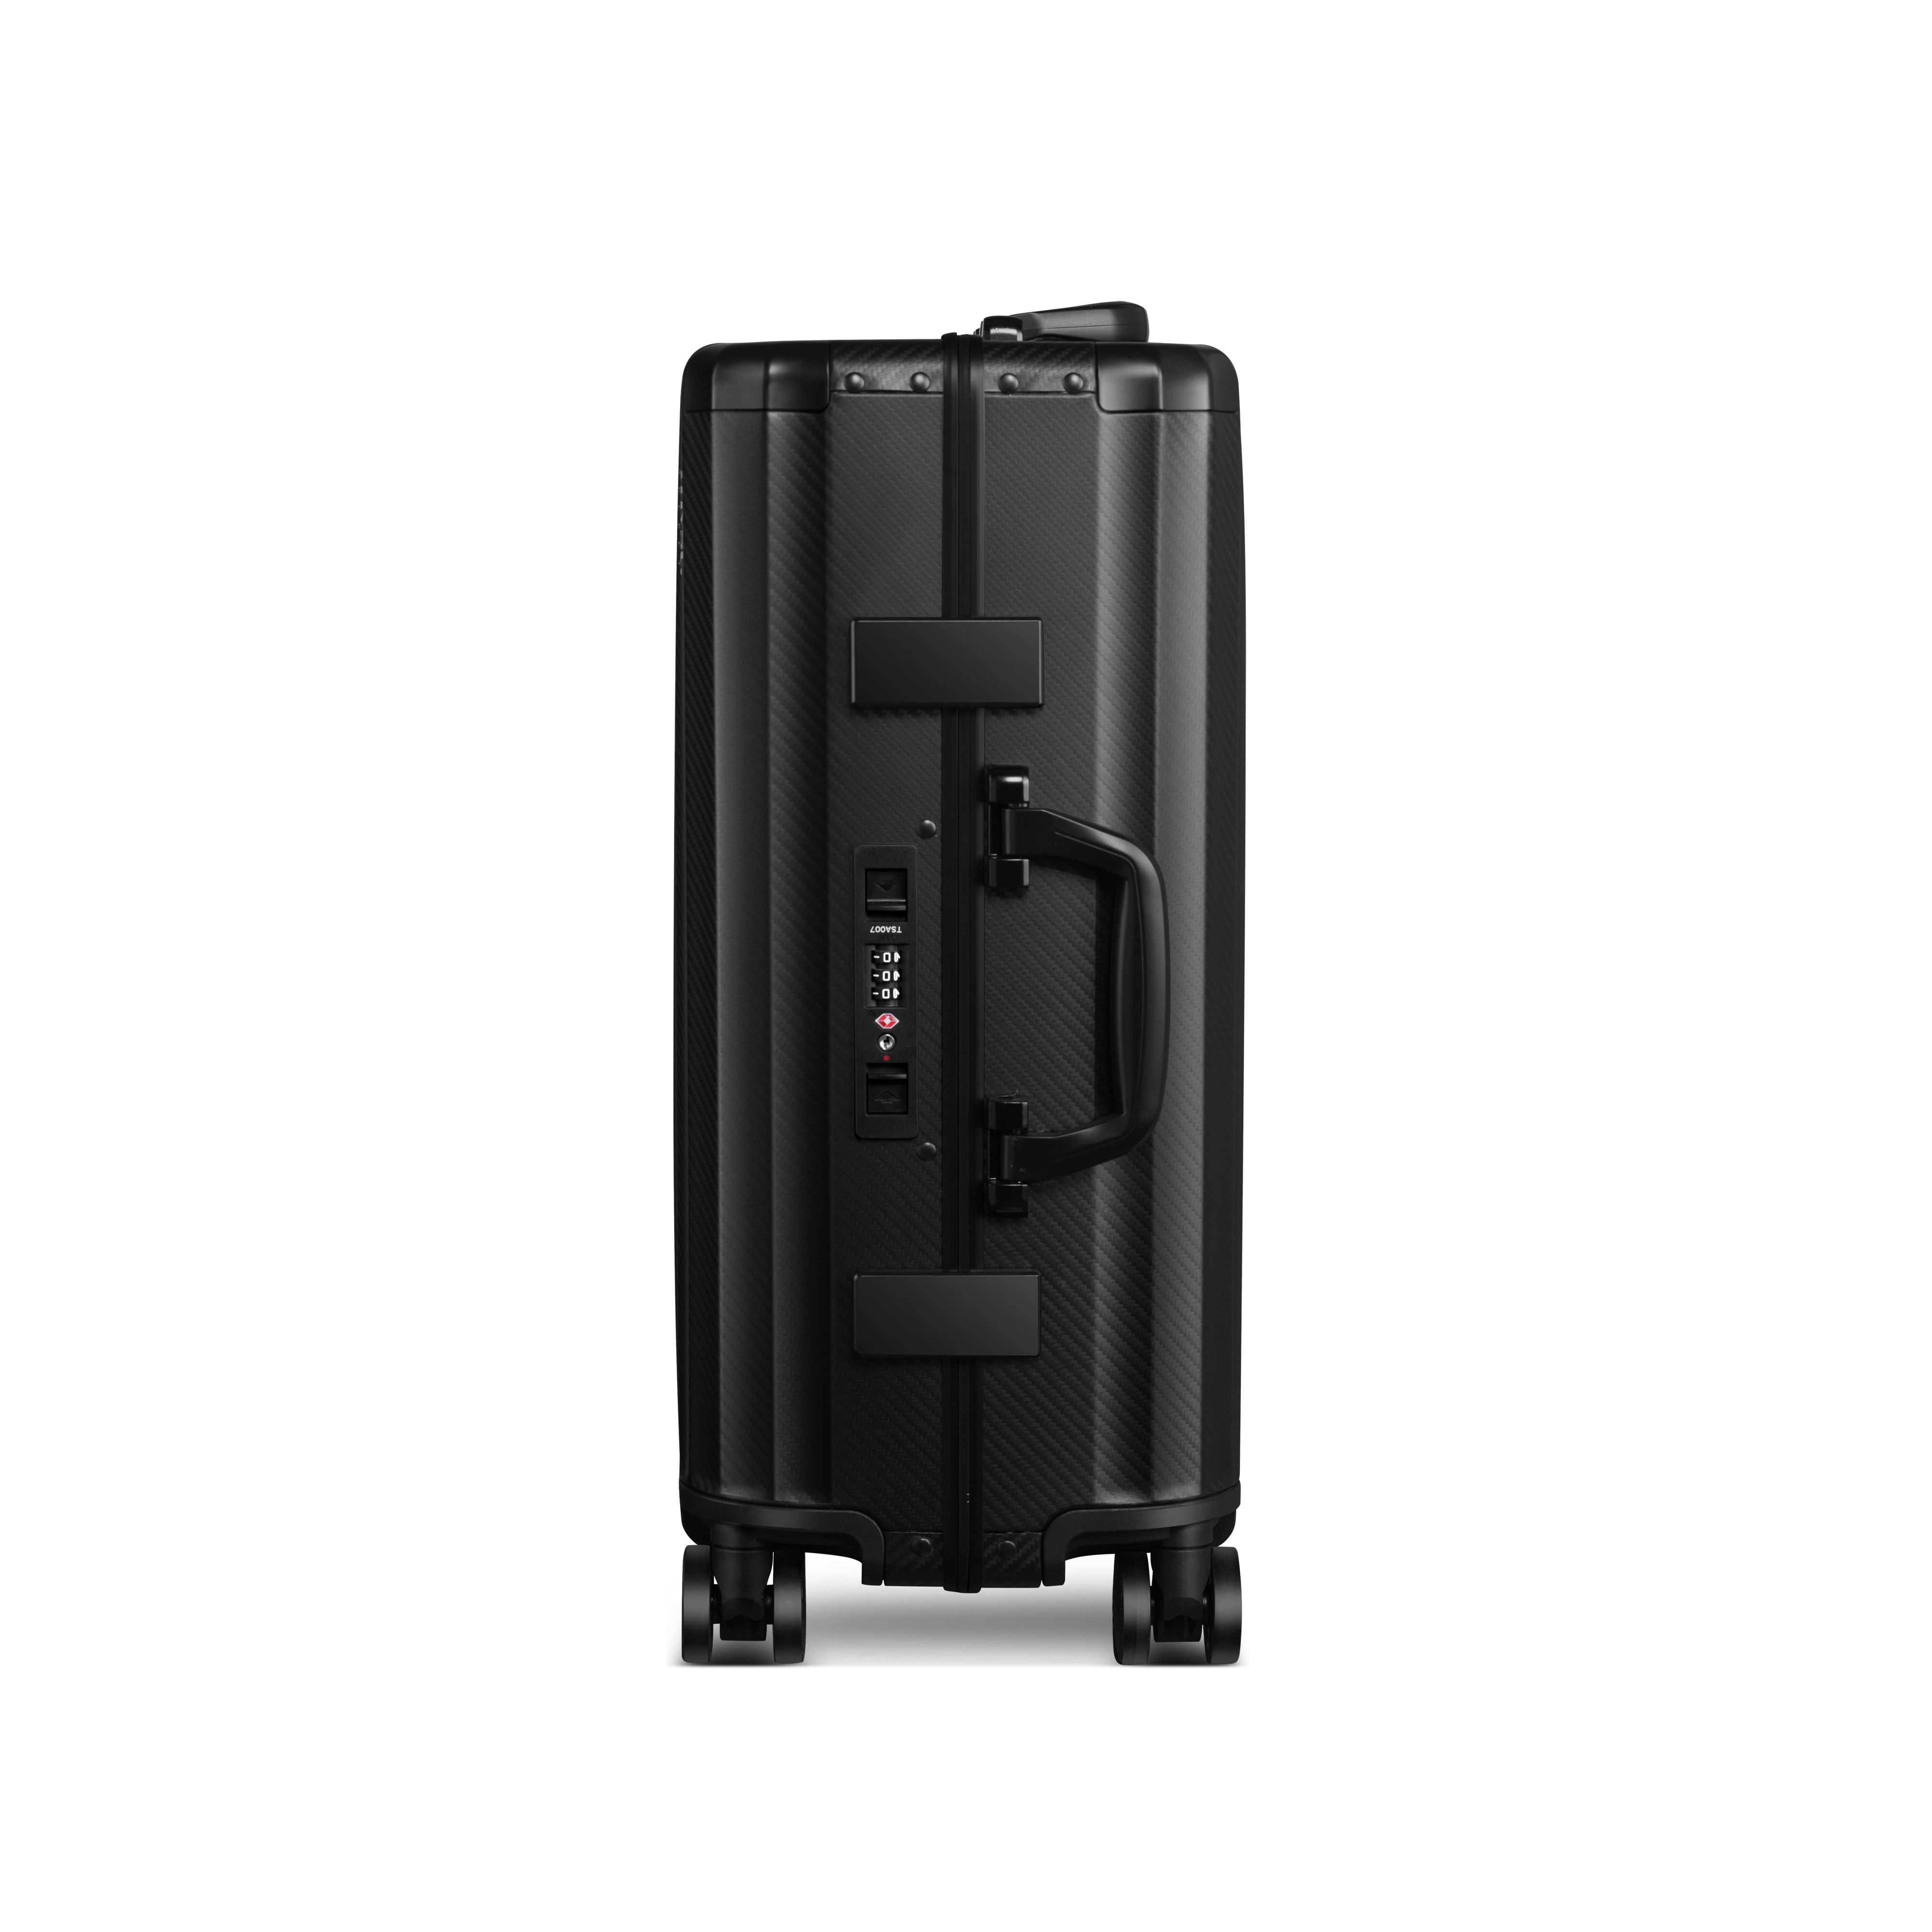 SPACE Aluminum Suitcase Black MVST